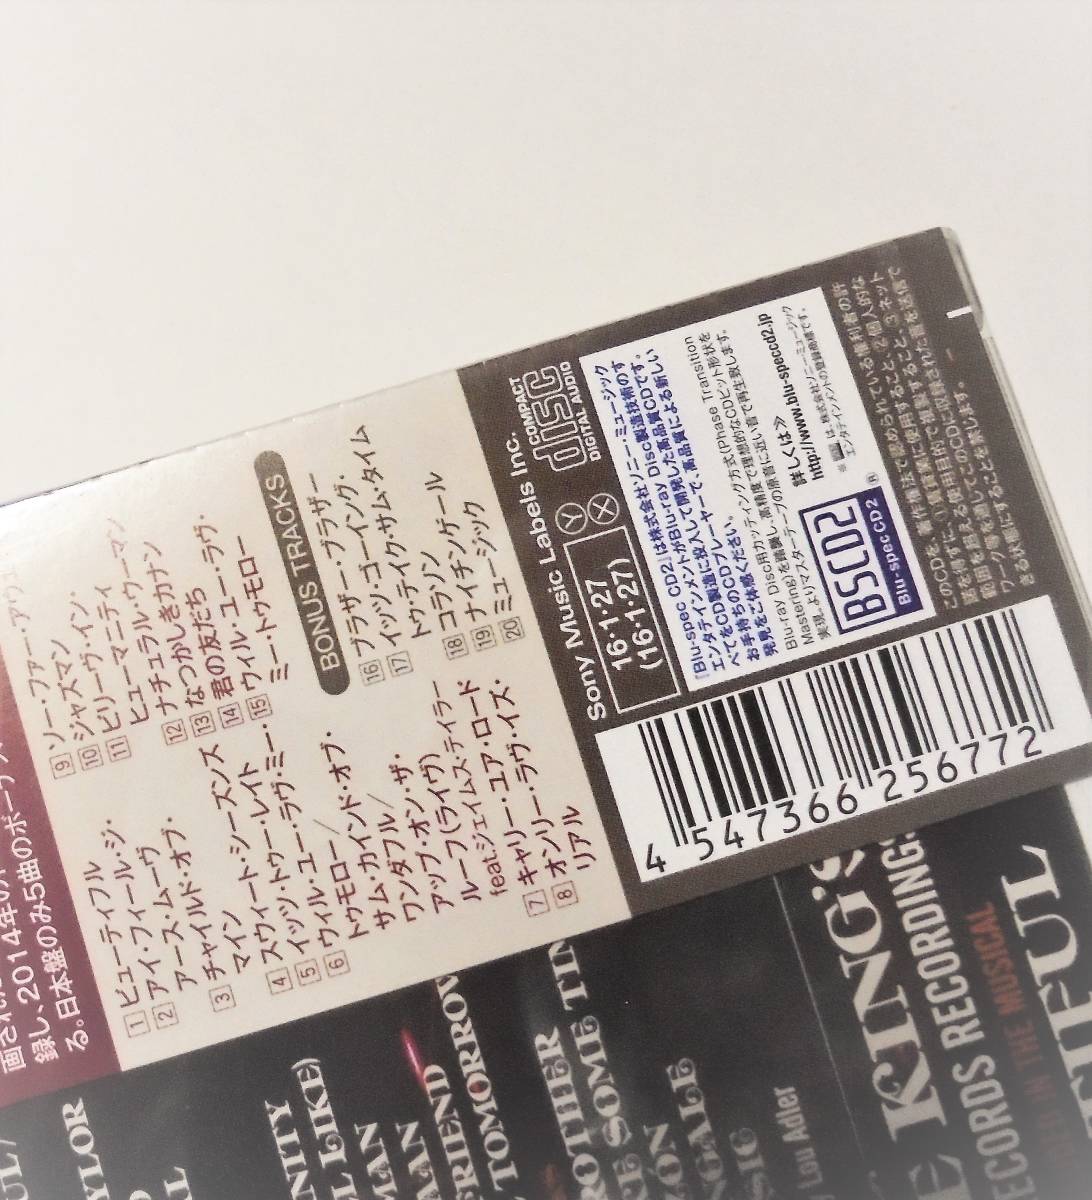 新品Blu spec CD2James Taylor Joni Mitchell Tom Scott Danny Kortchmar Beautiful Collection Best Ofキャロルキング ベストGoffin&Kingの画像3